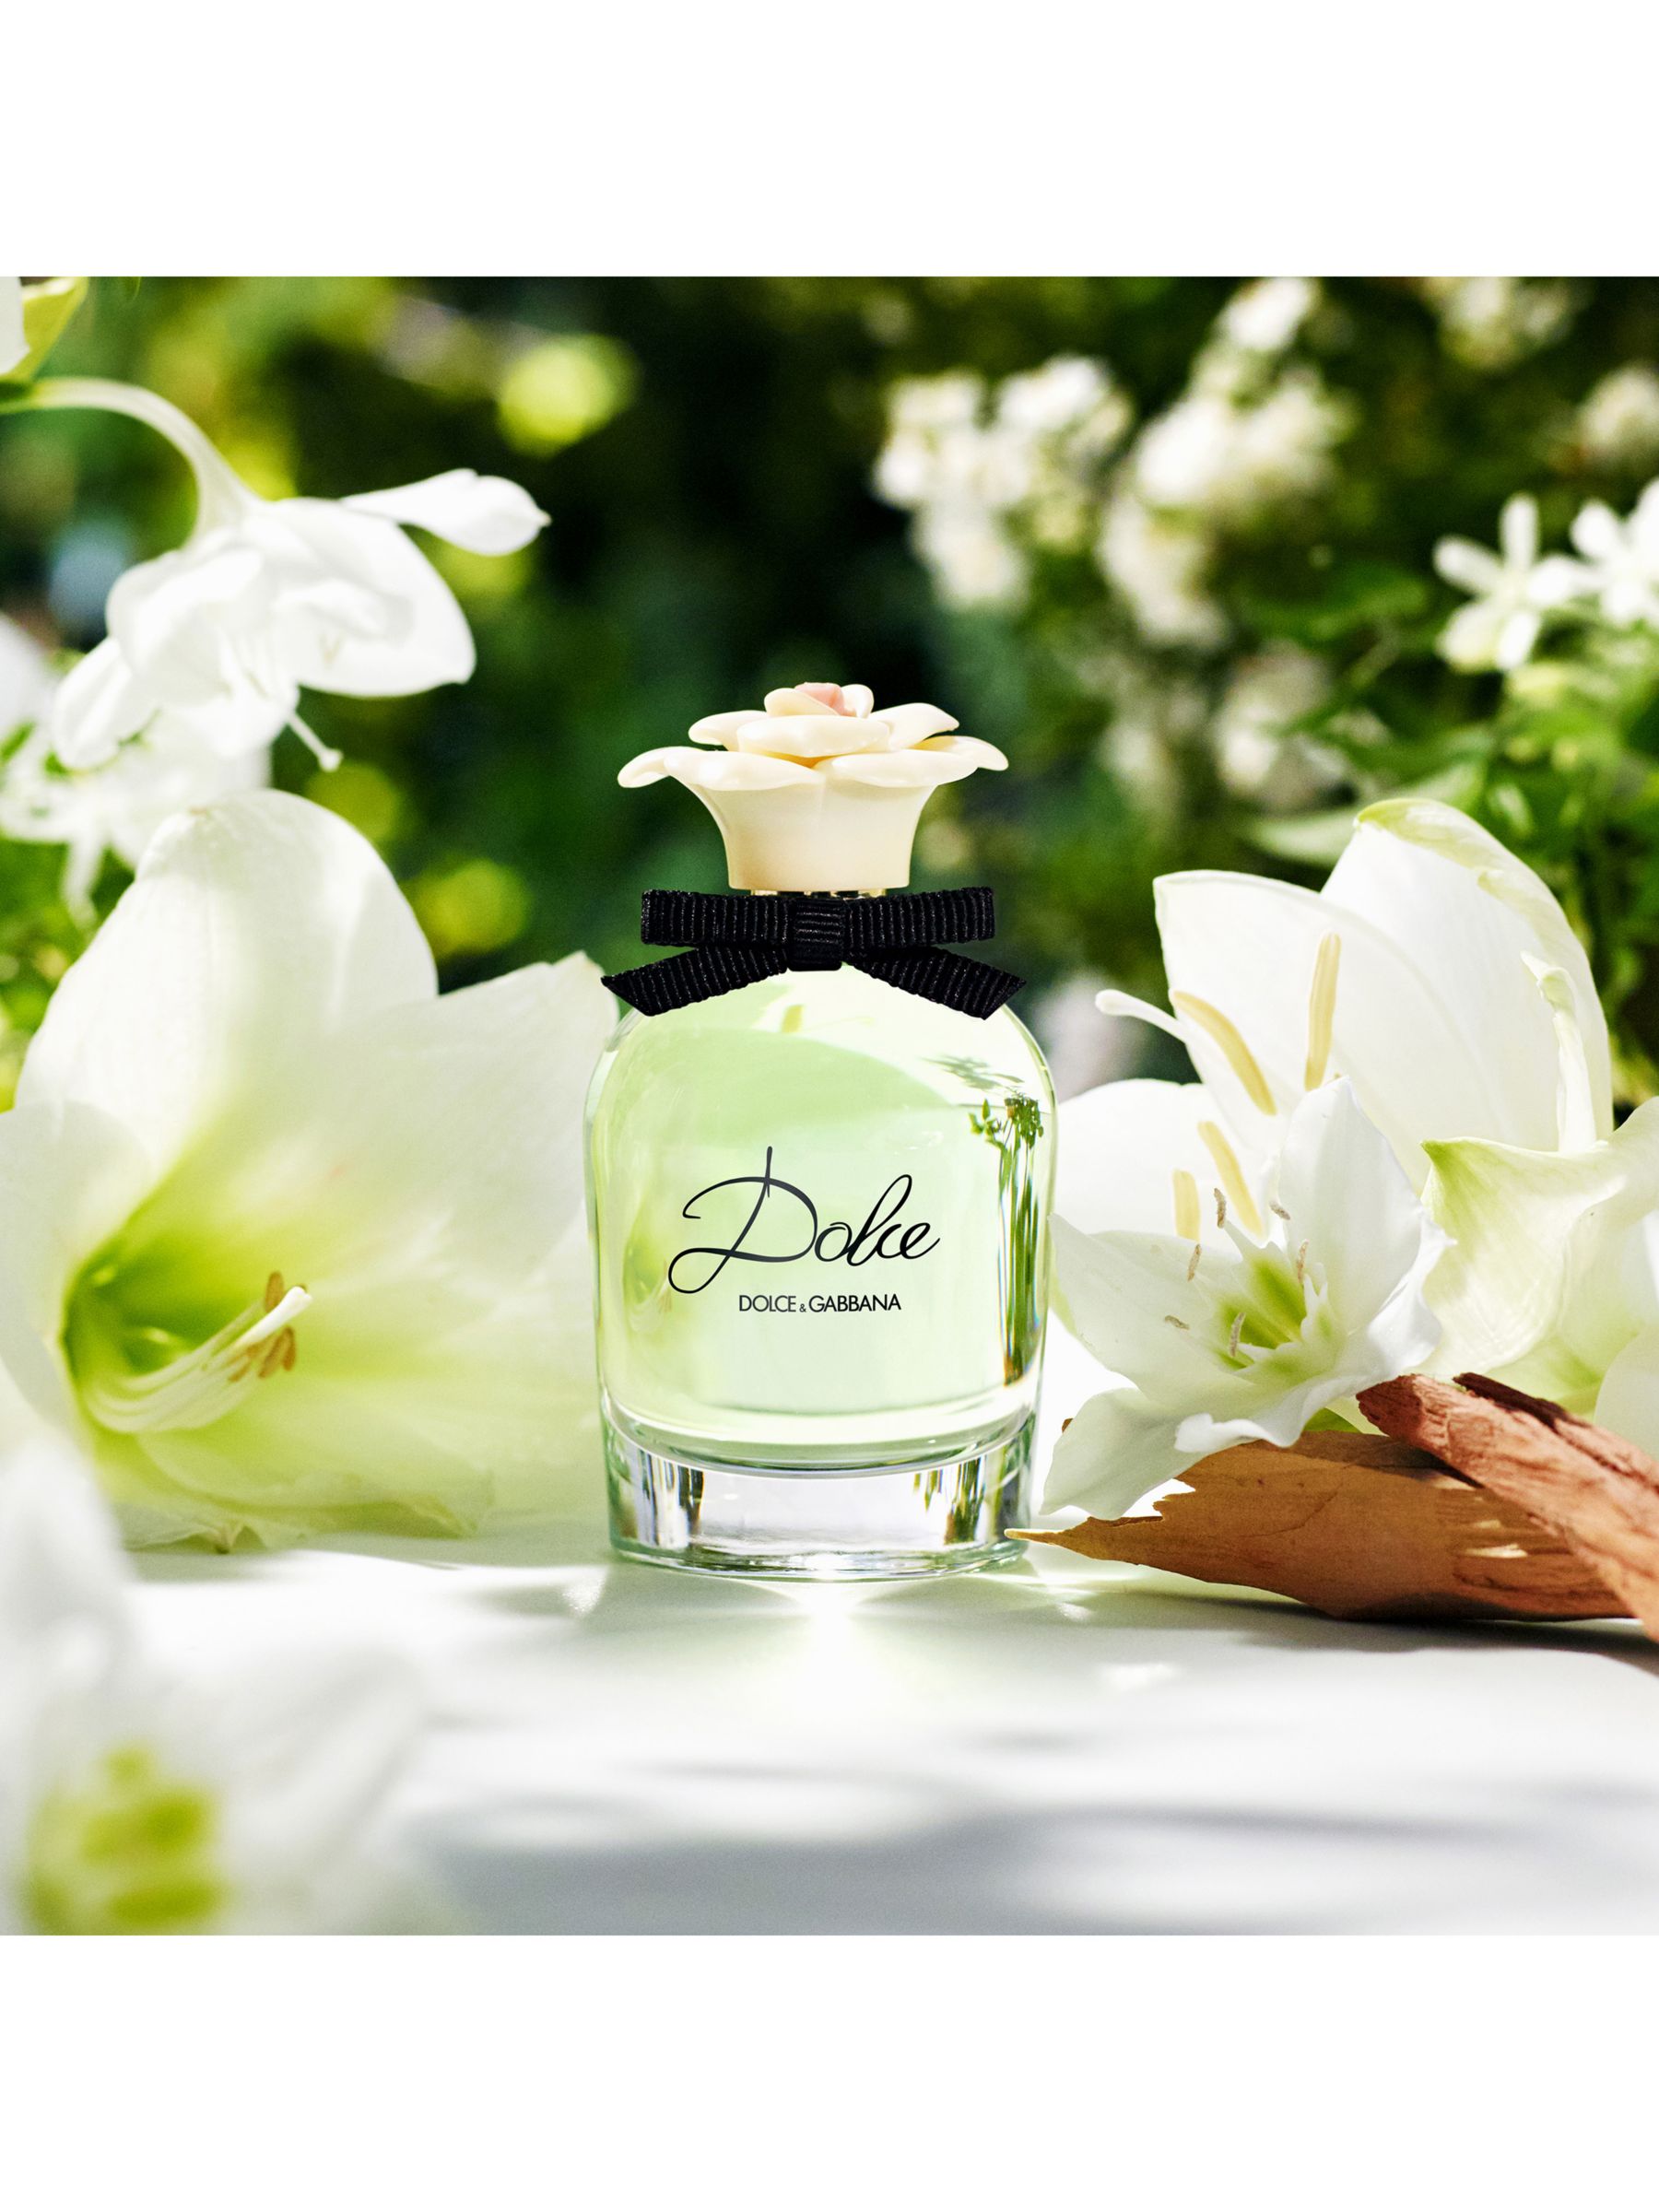 Dolce & Gabbana Dolce Eau de Parfum, 75ml at John Lewis & Partners